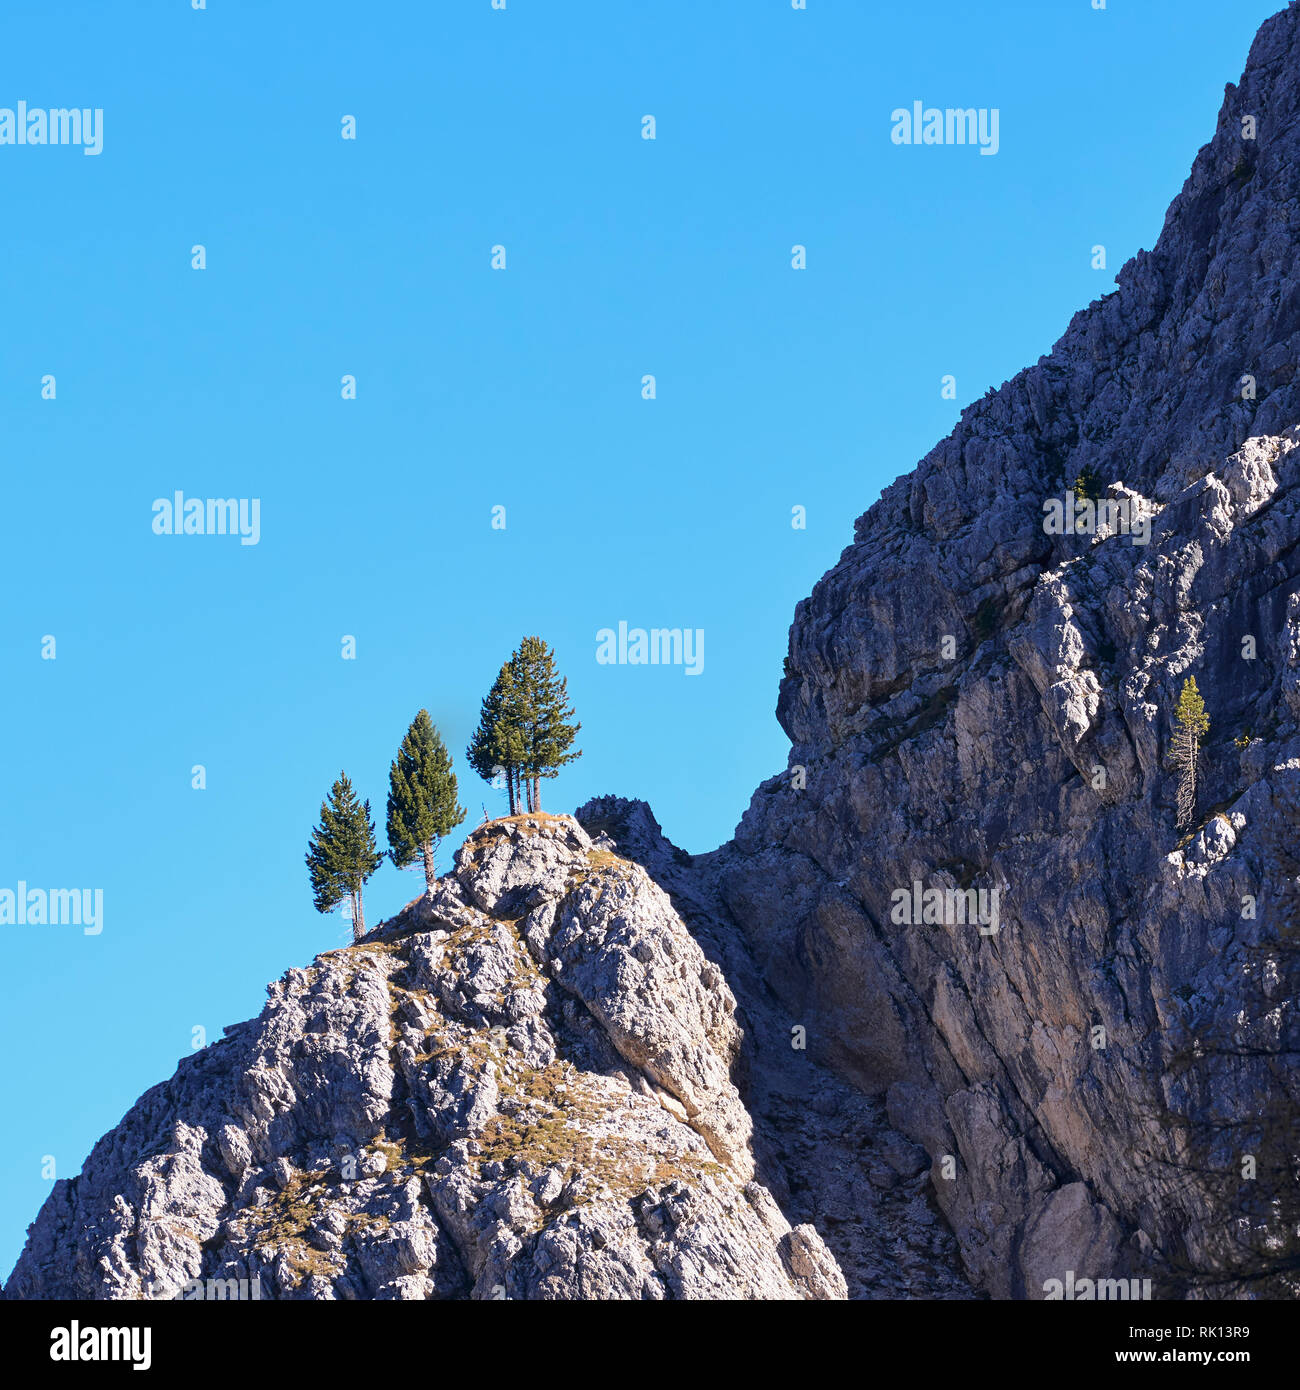 Three pine trees on a steep ridge, Cadini di Misuina, Dolomites, near Misurina, Veneto, Italy Stock Photo